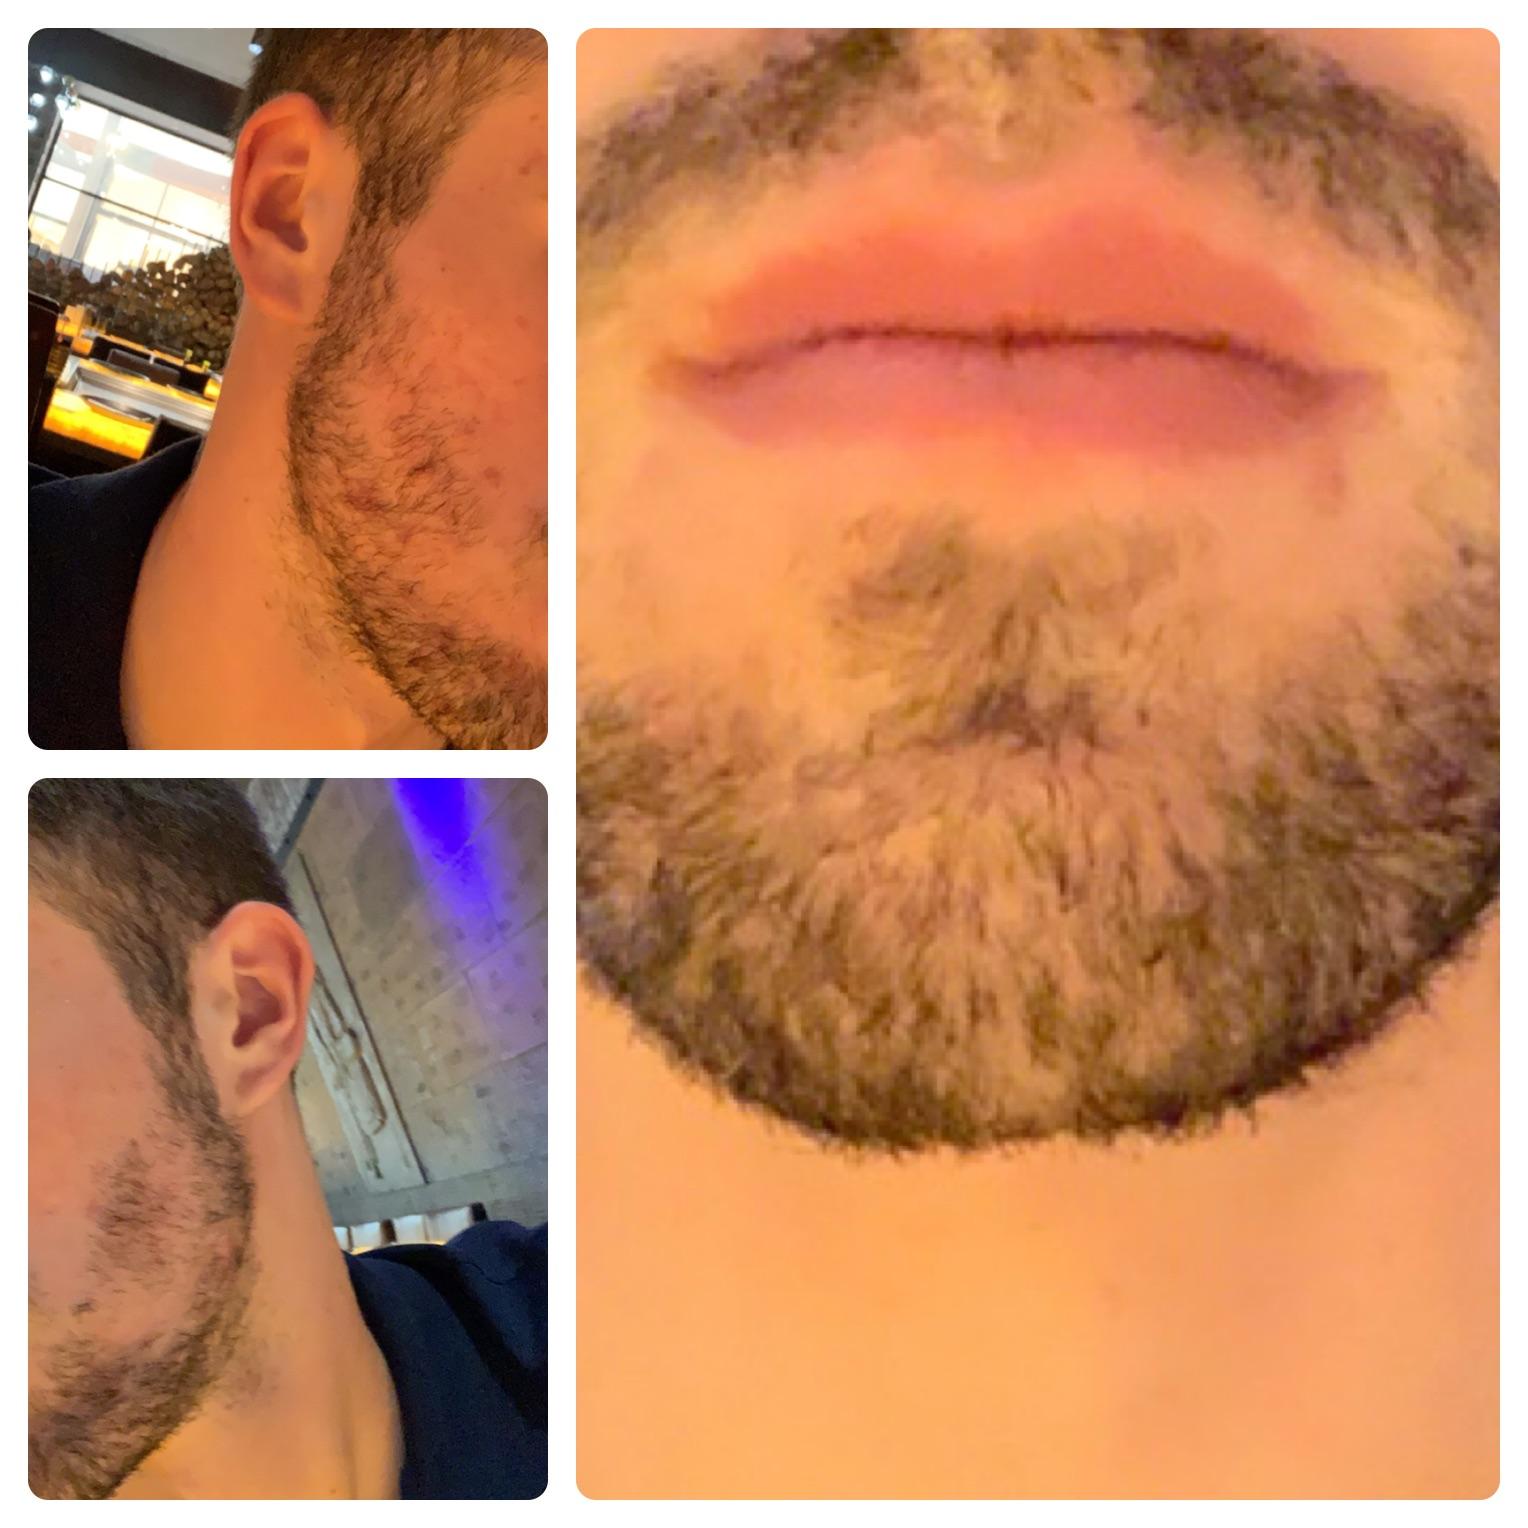 Психология бороды: 4 сигнала, которые исходят от бородатых мужчин